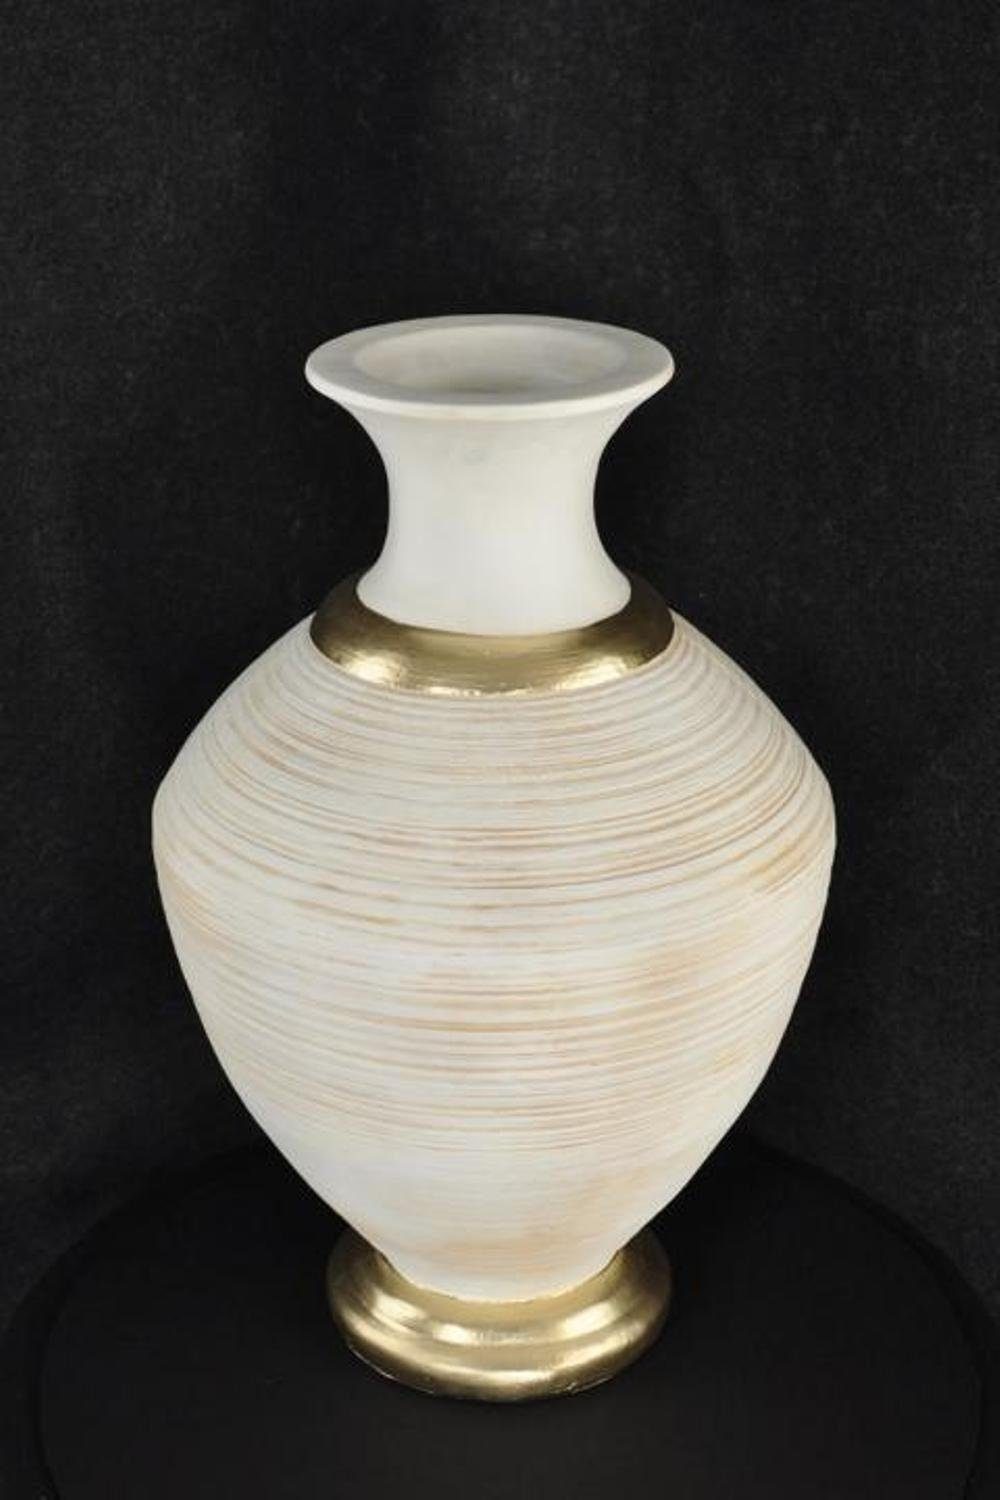 Antik Weiß Deko Stil Vase Big Schale Skulptur Medusa JVmoebel Vasen Design Blumen XXL 65cm